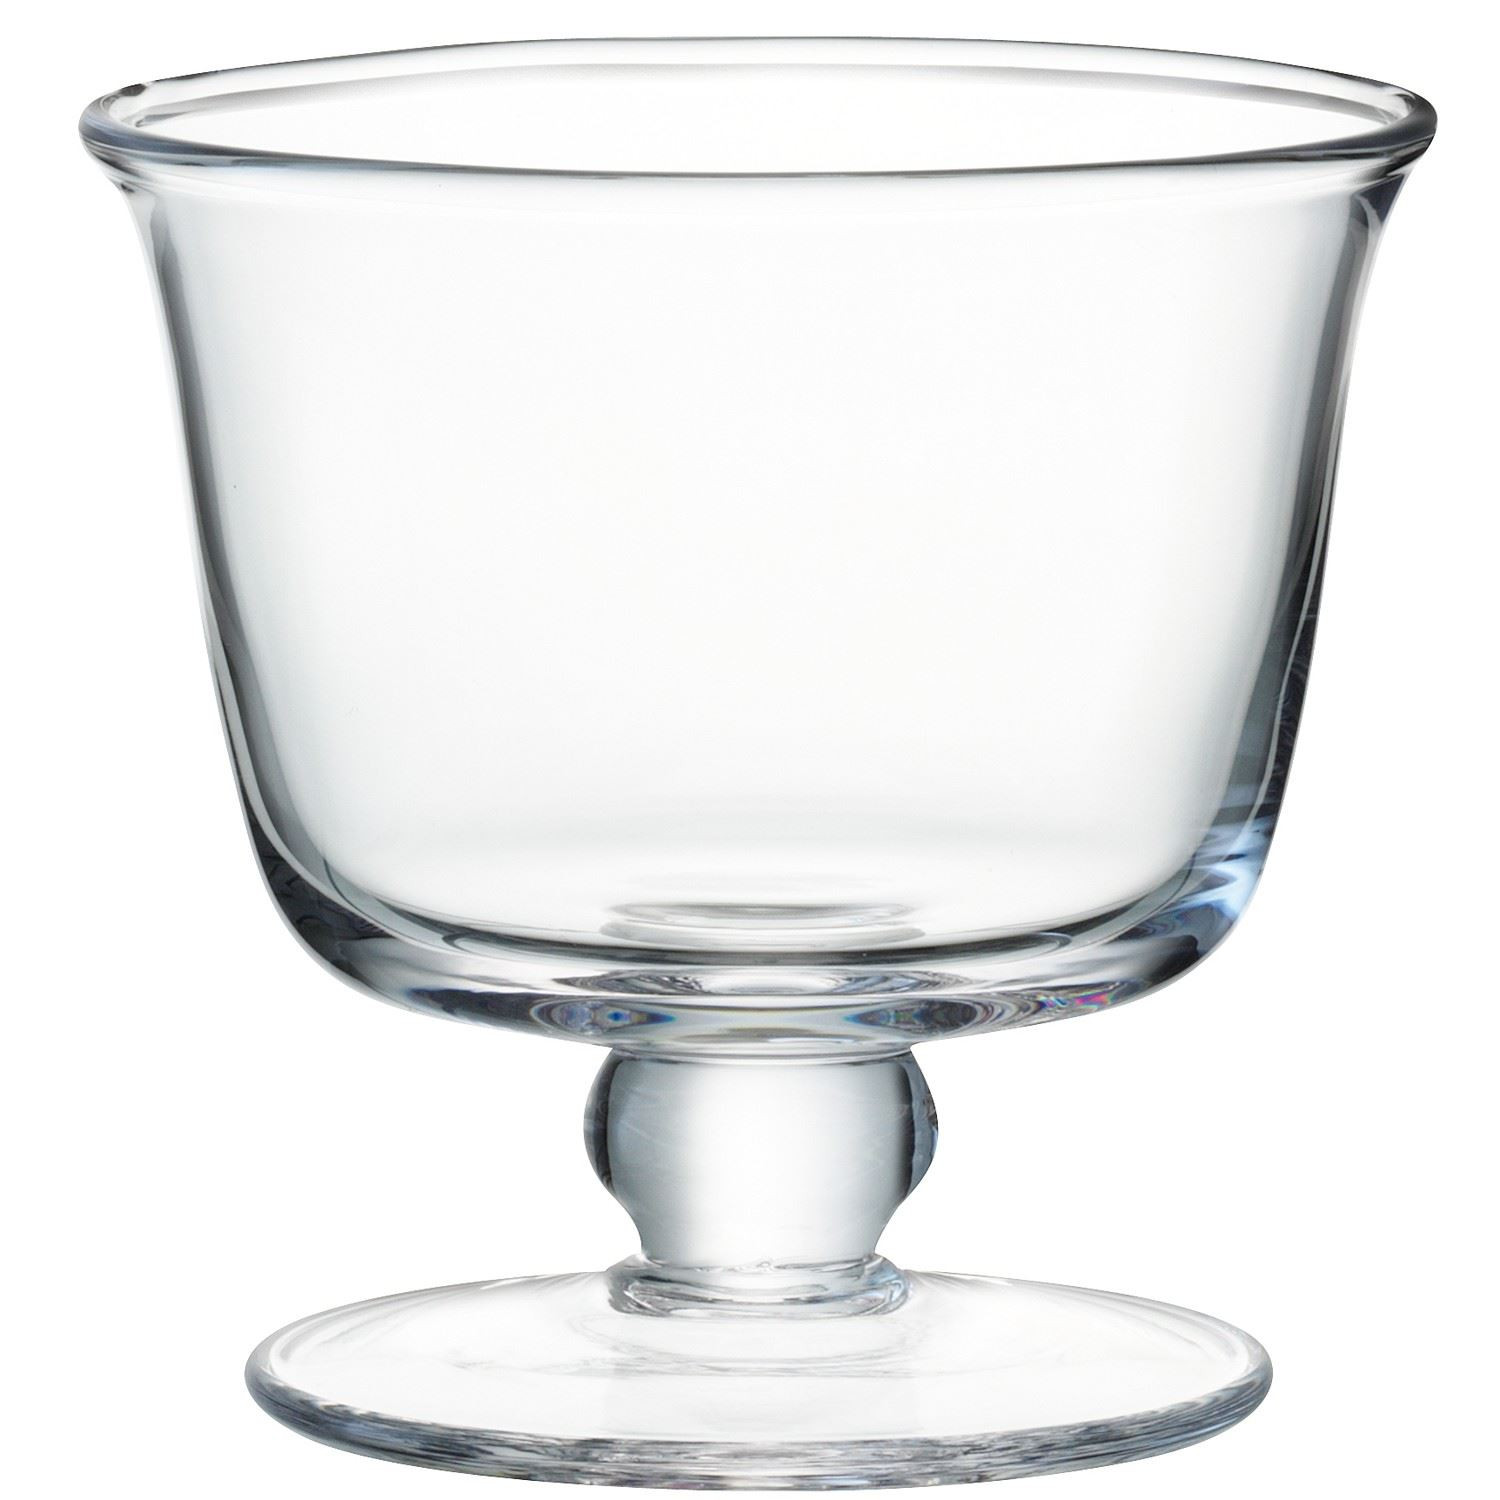 Glass Dessert Bowls
 LSA Mouthblown Glass Trifle port or Dessert Bowls Dish